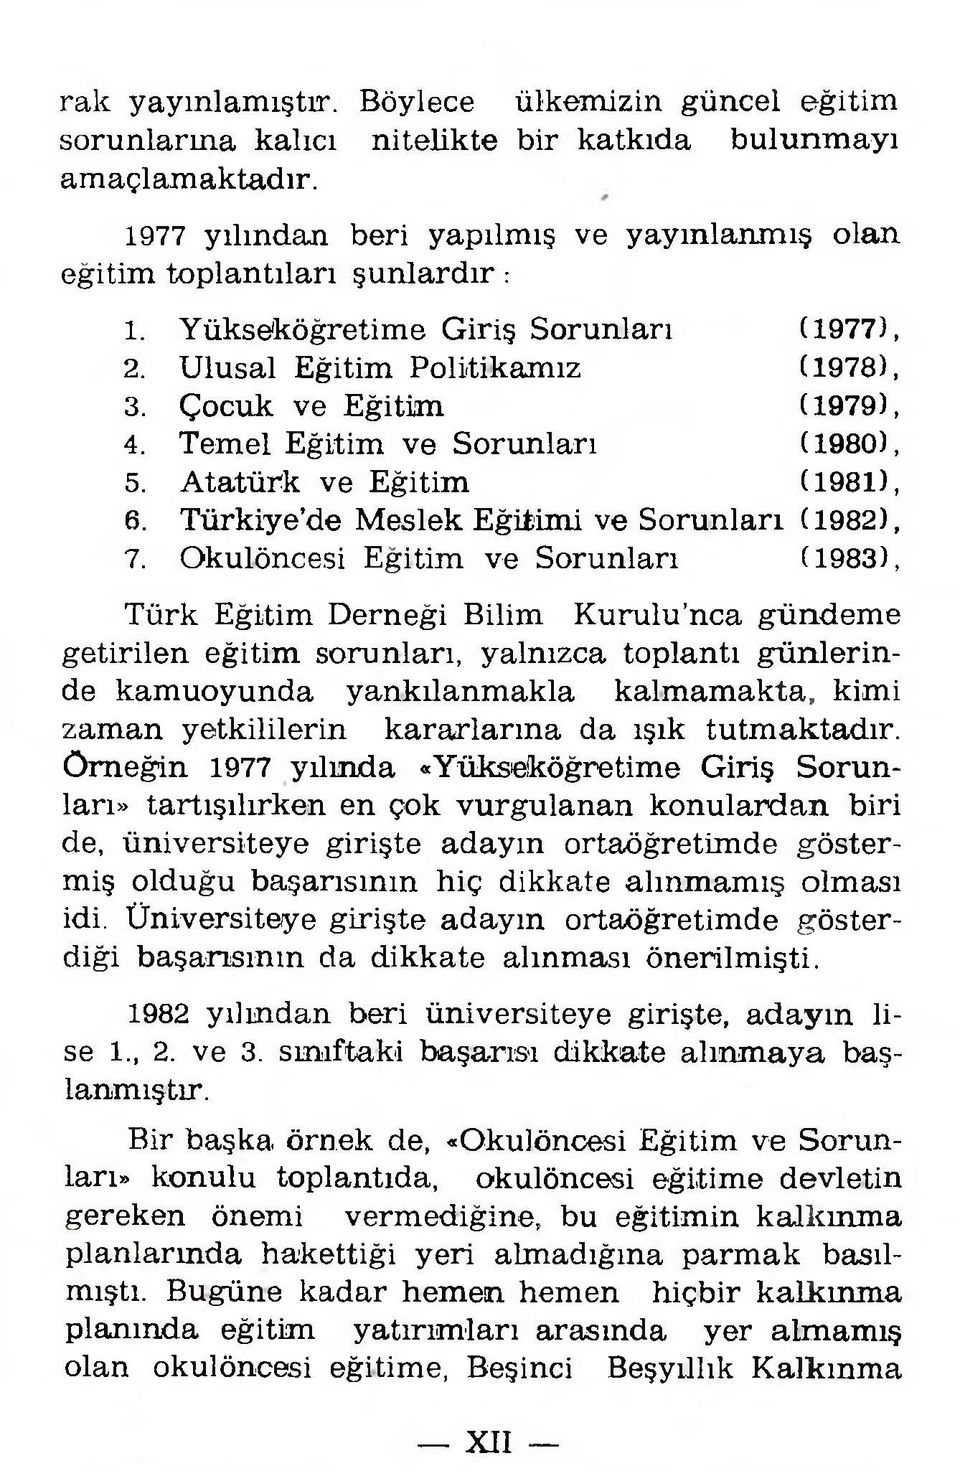 Ç ocuk ve E ğitim (1979), 4. T em el E ğitim v e S oru n ları (1980), 5. A tatürk ve E ğitim (1981), 6. T ürkiye d e M eslek E ğitim i ve S oru n ları (1982), 7.